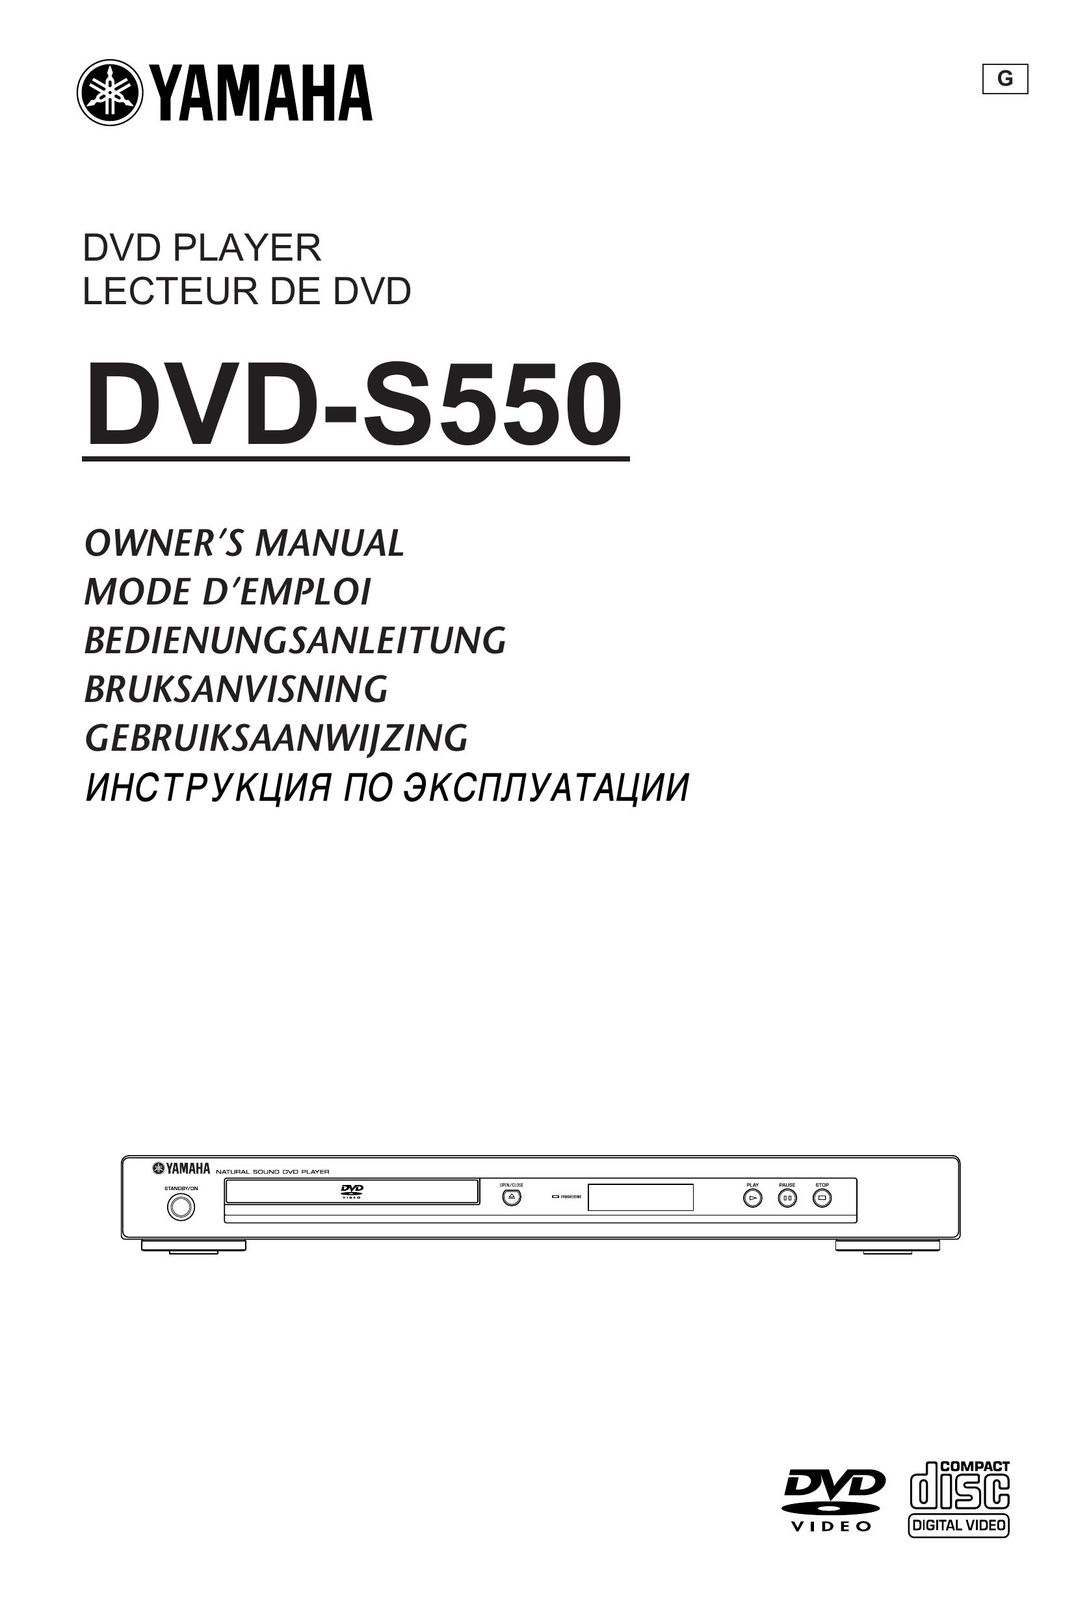 Yamaha DVD-S550 DVD Player User Manual